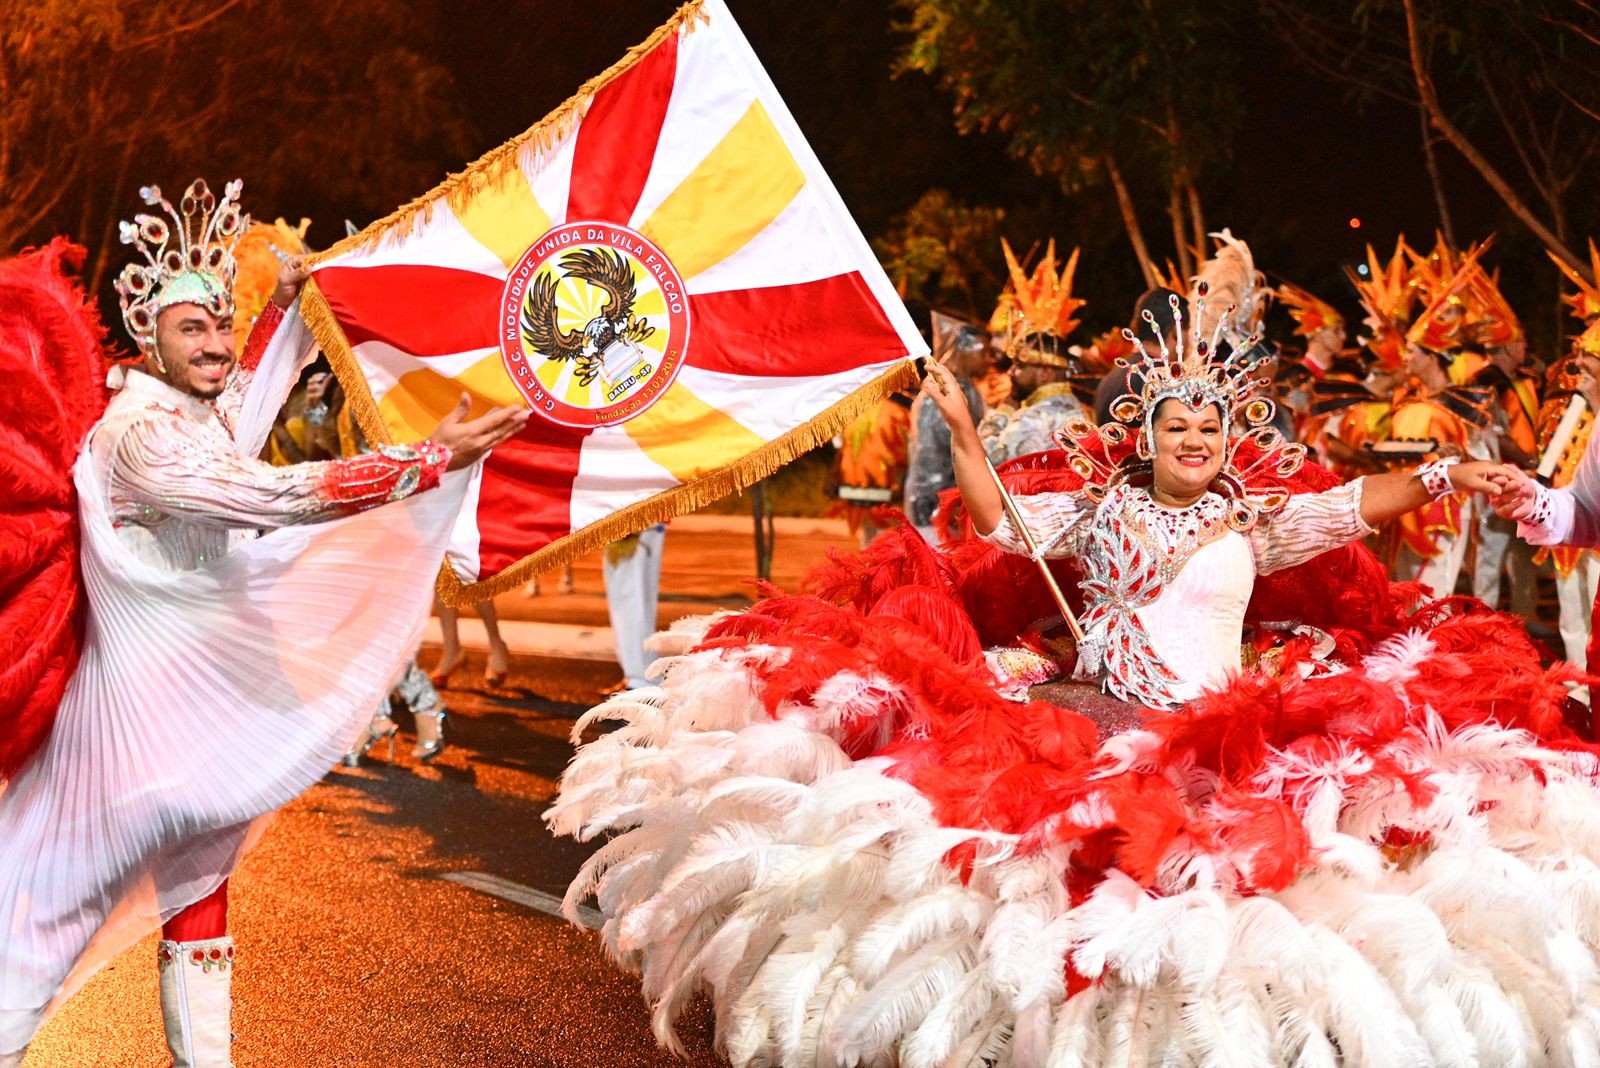 escola-de-samba-mocidade-unida-da-vila-falcao-vence-carnaval-em-bauru